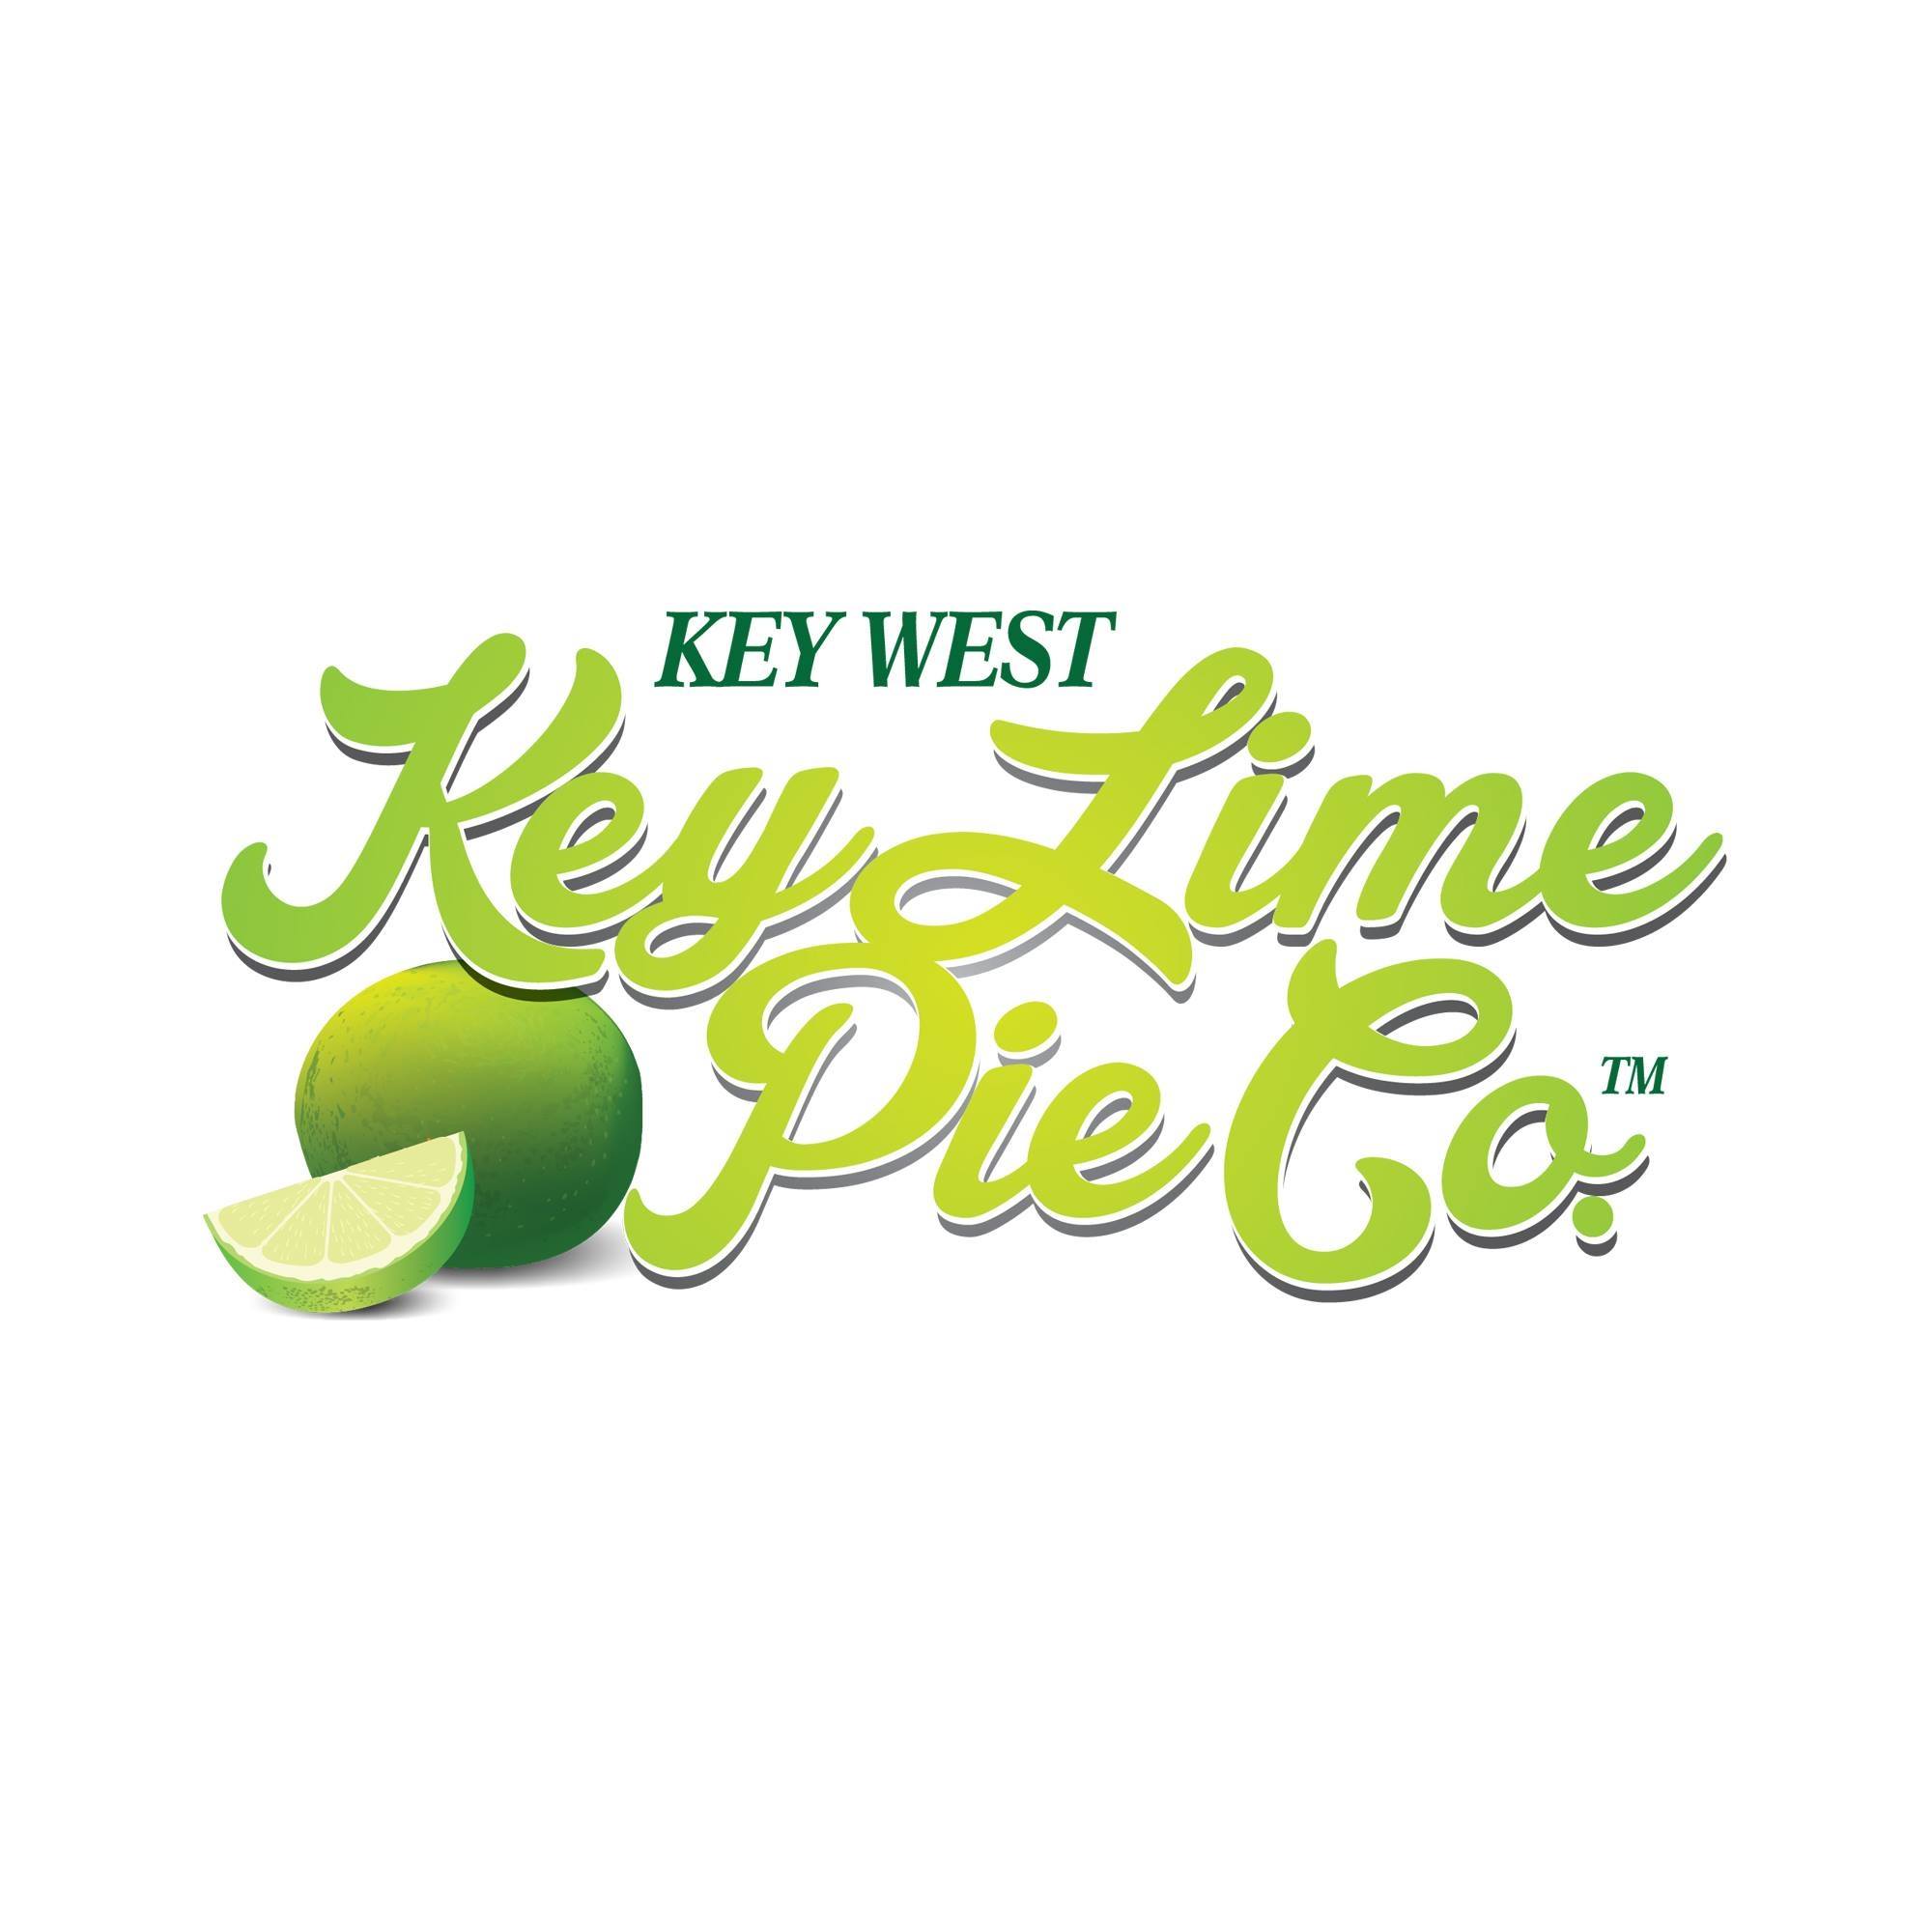 Key West Key Lime Pie Co. 